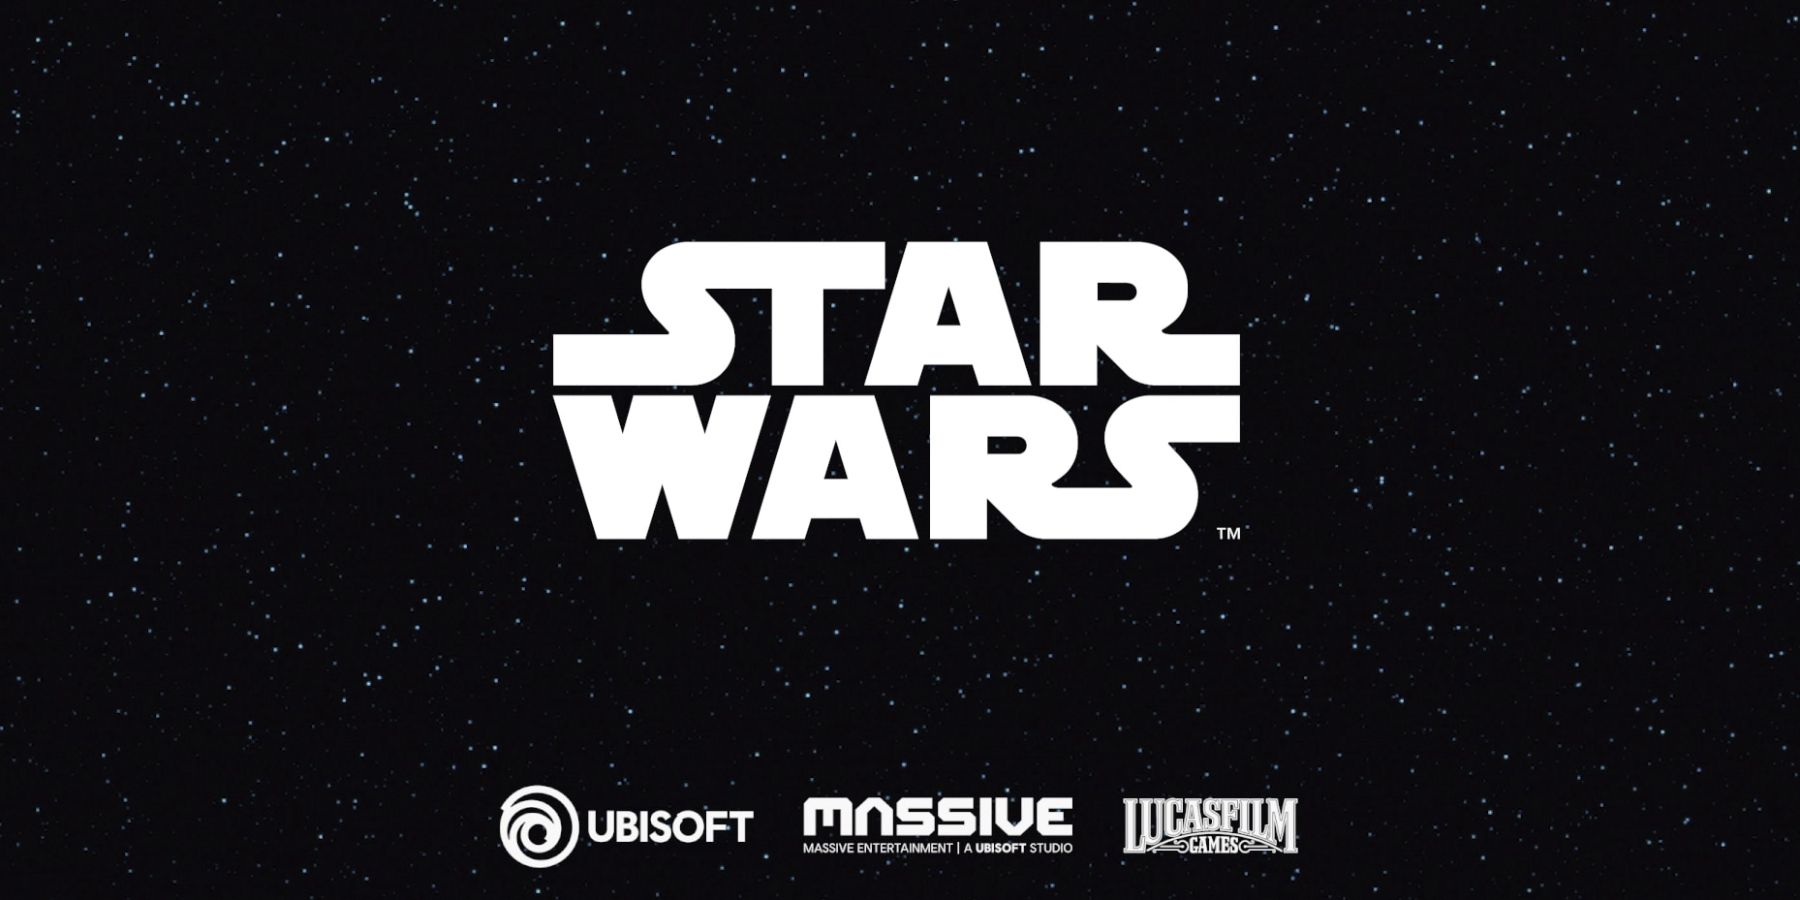 Gambar logo Star Wars dengan latar berbintang dengan logo Ubisoft, Massive, dan Lucasfilm di bawahnya.